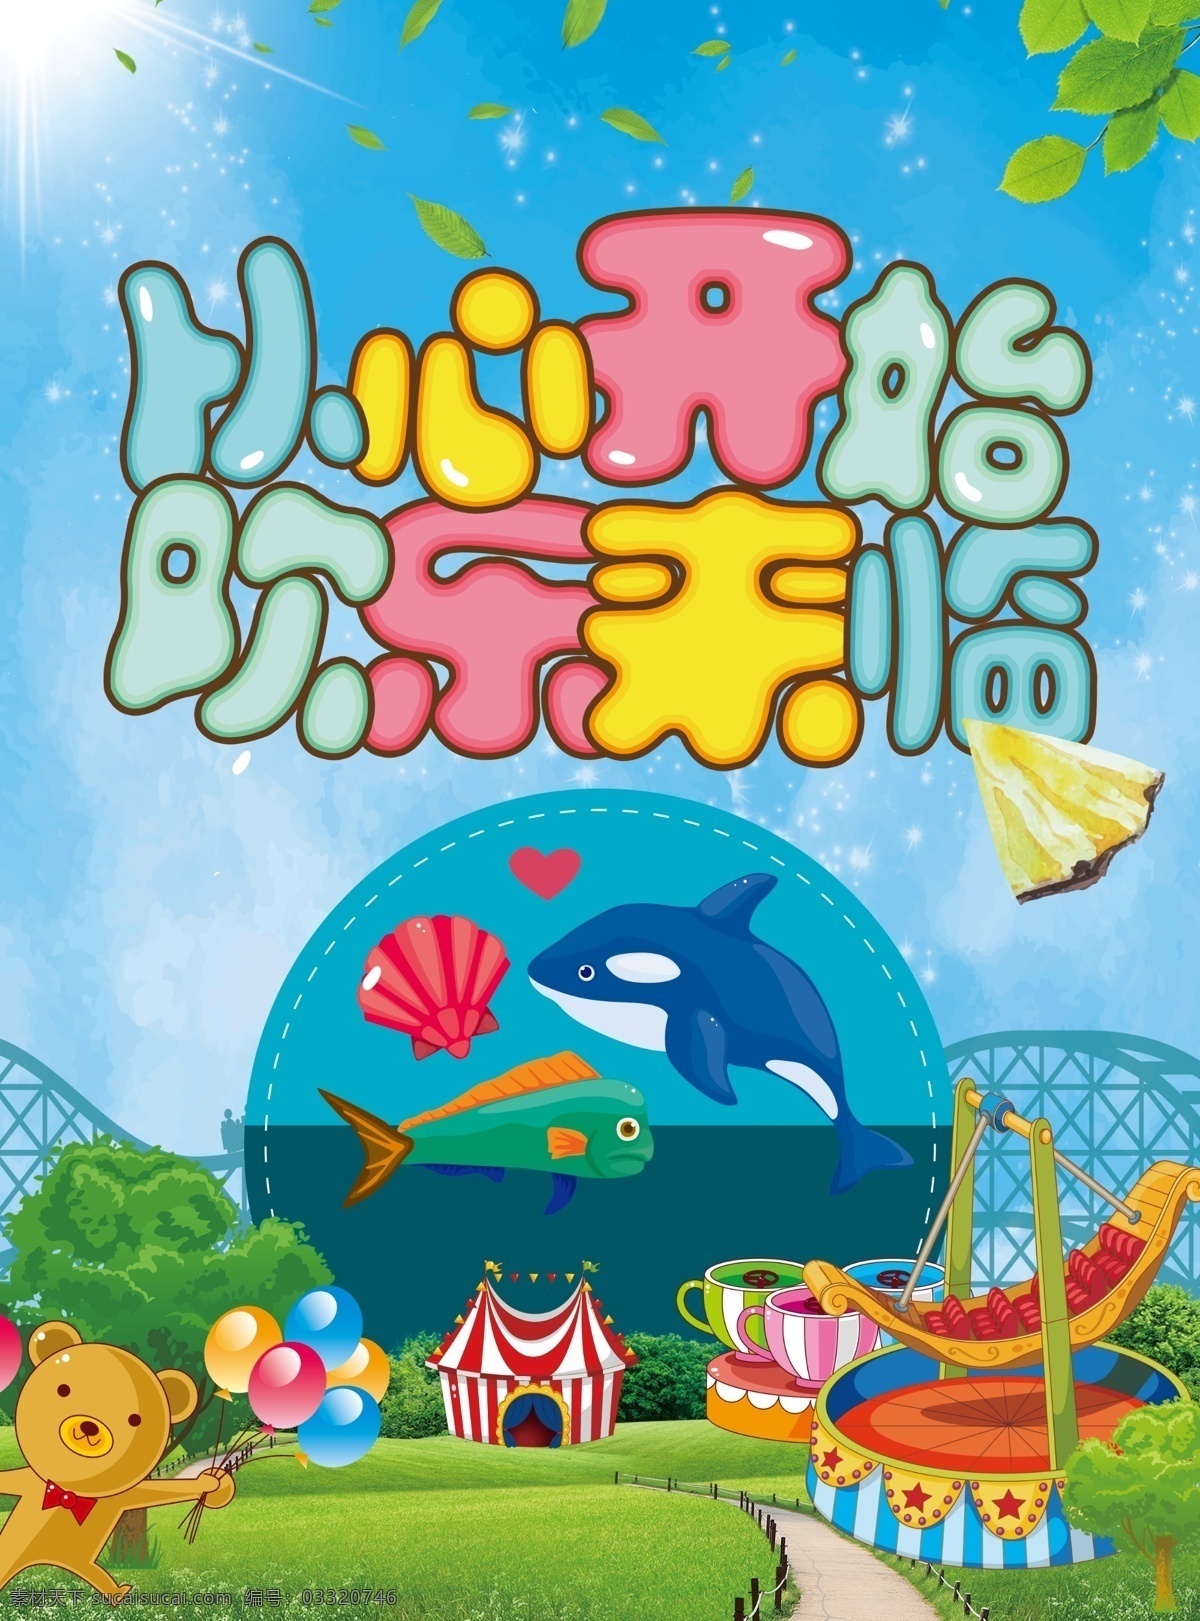 儿童游乐园 游乐园 dm单 从心开始 欢乐 儿童 卡通 小熊 海豚 喷绘色彩